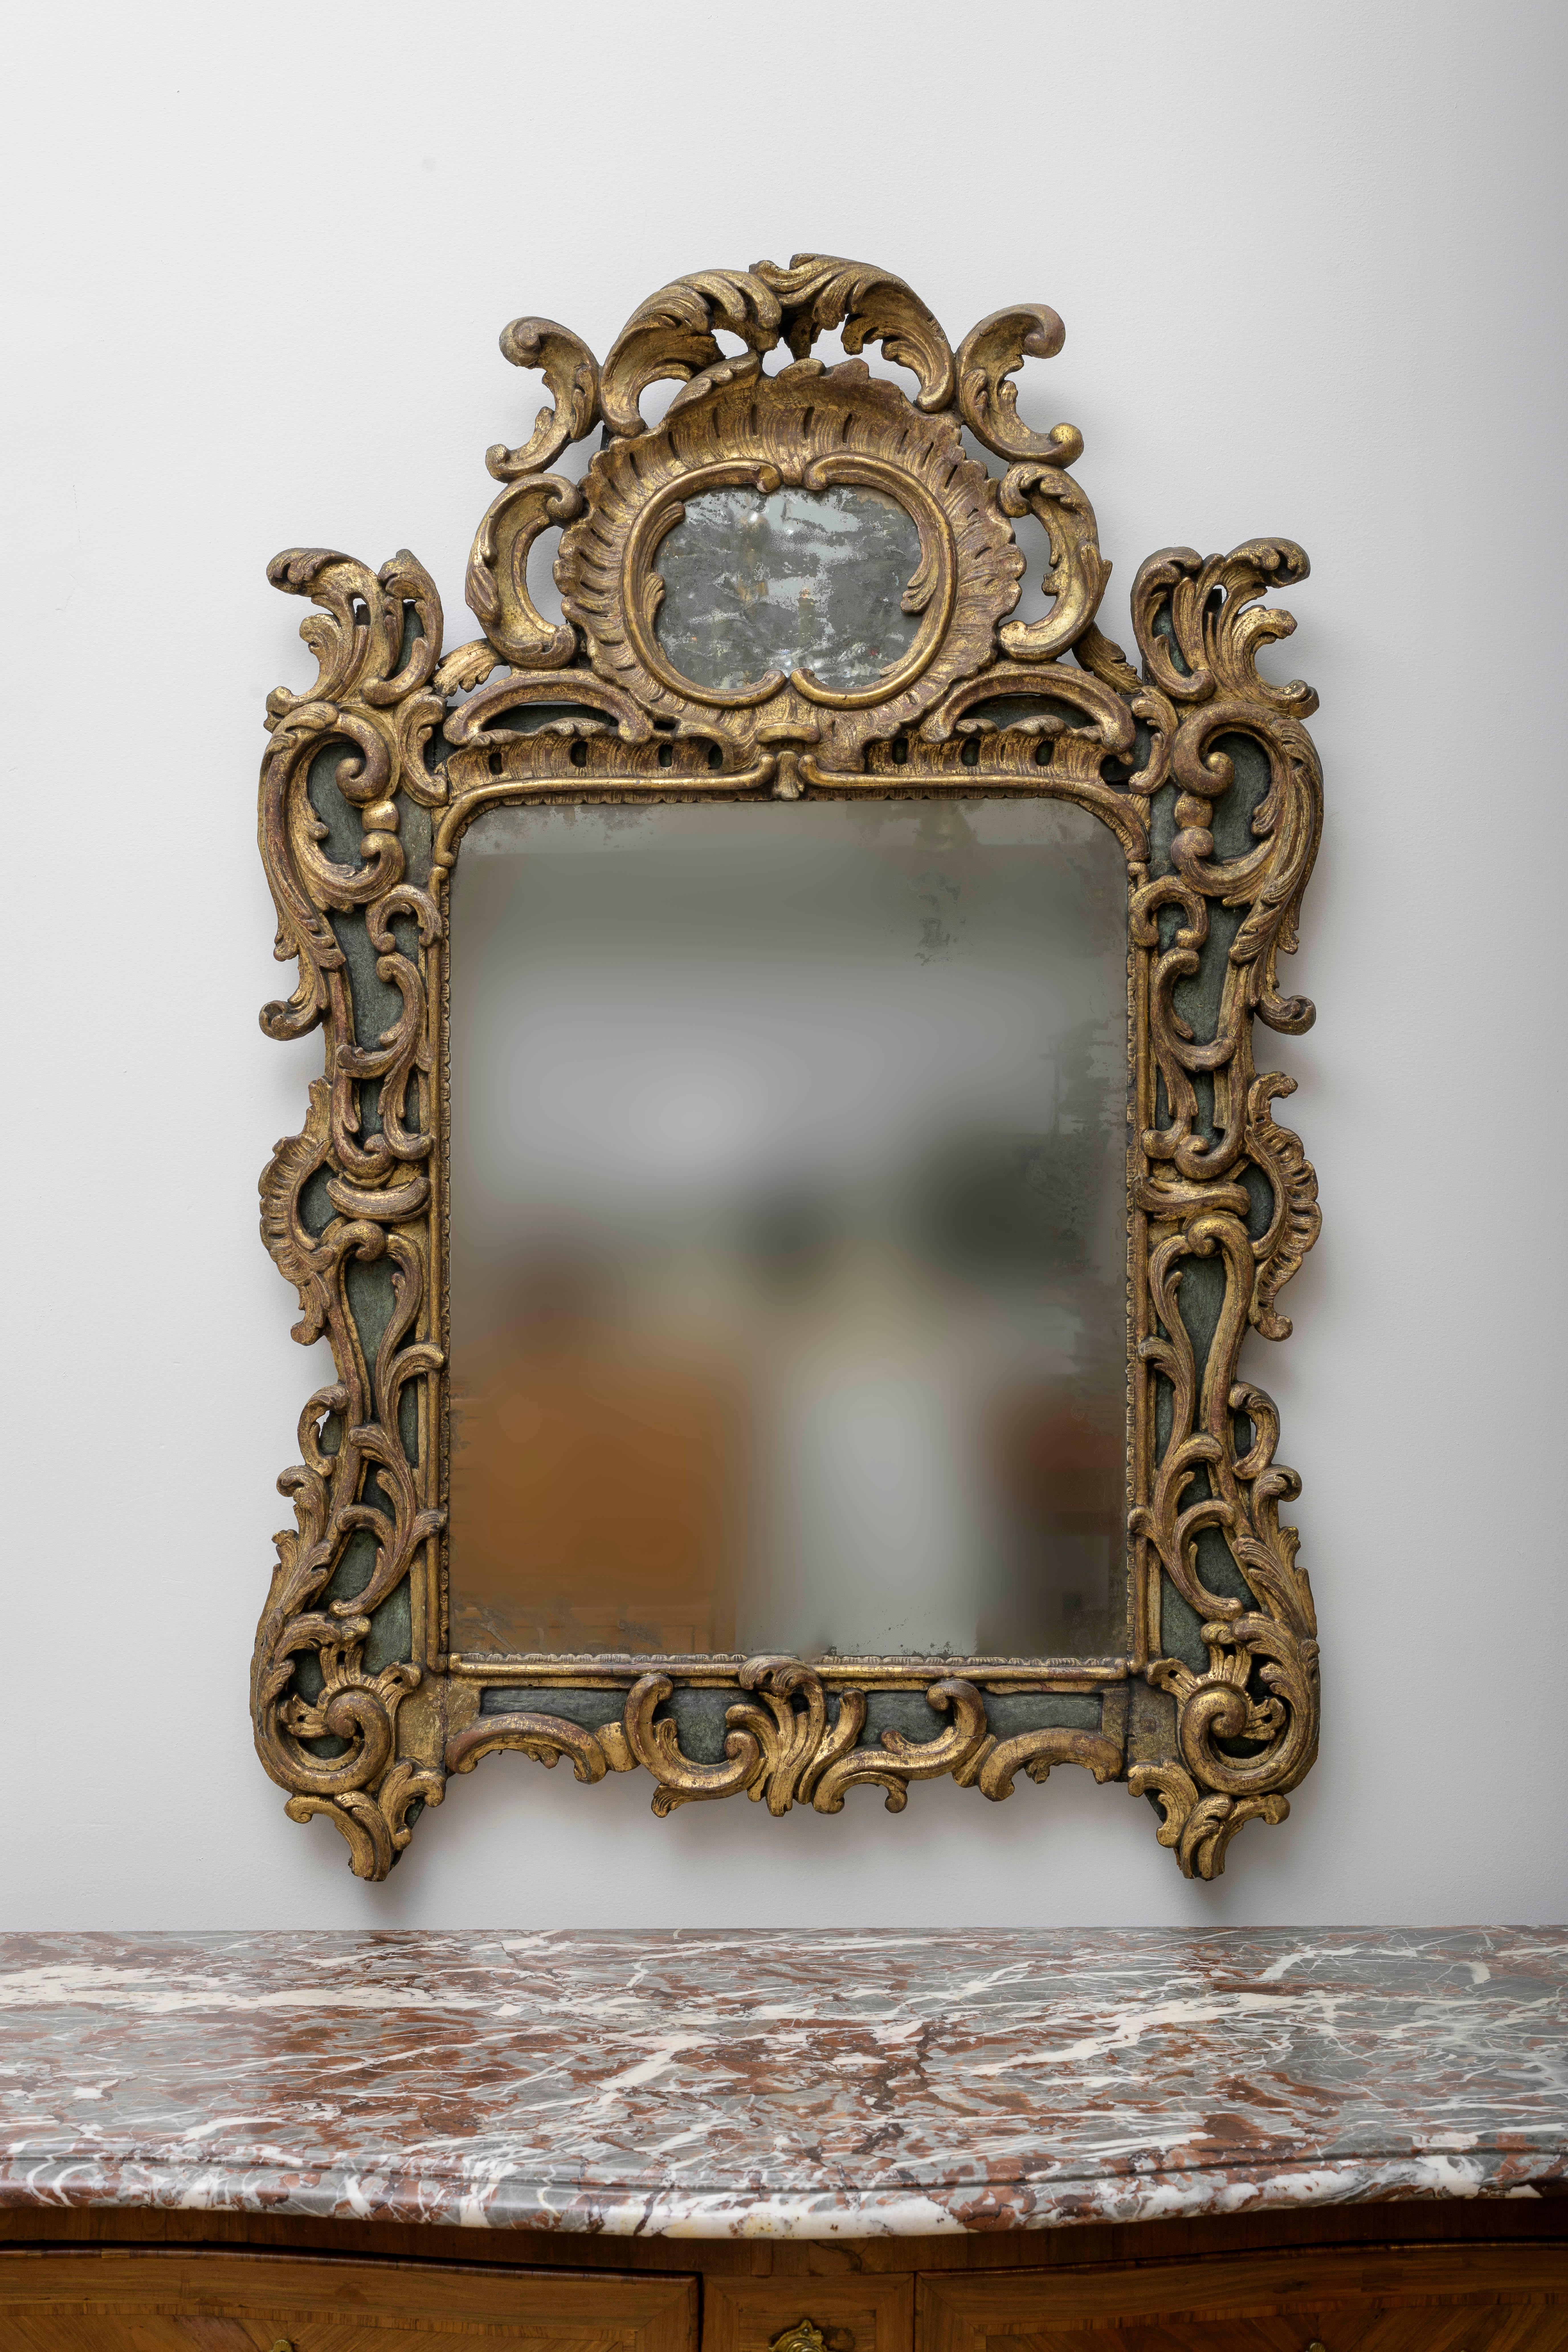 Magnifique miroir richement sculpté et doré Belles proportions. 
Il s'agit d'un travail d'expertise comme on peut le constater  par la qualité du cadre de travail abondant, profond, ajouré et fermé. Il s'agit d'un style typique de la Rocaille,  du